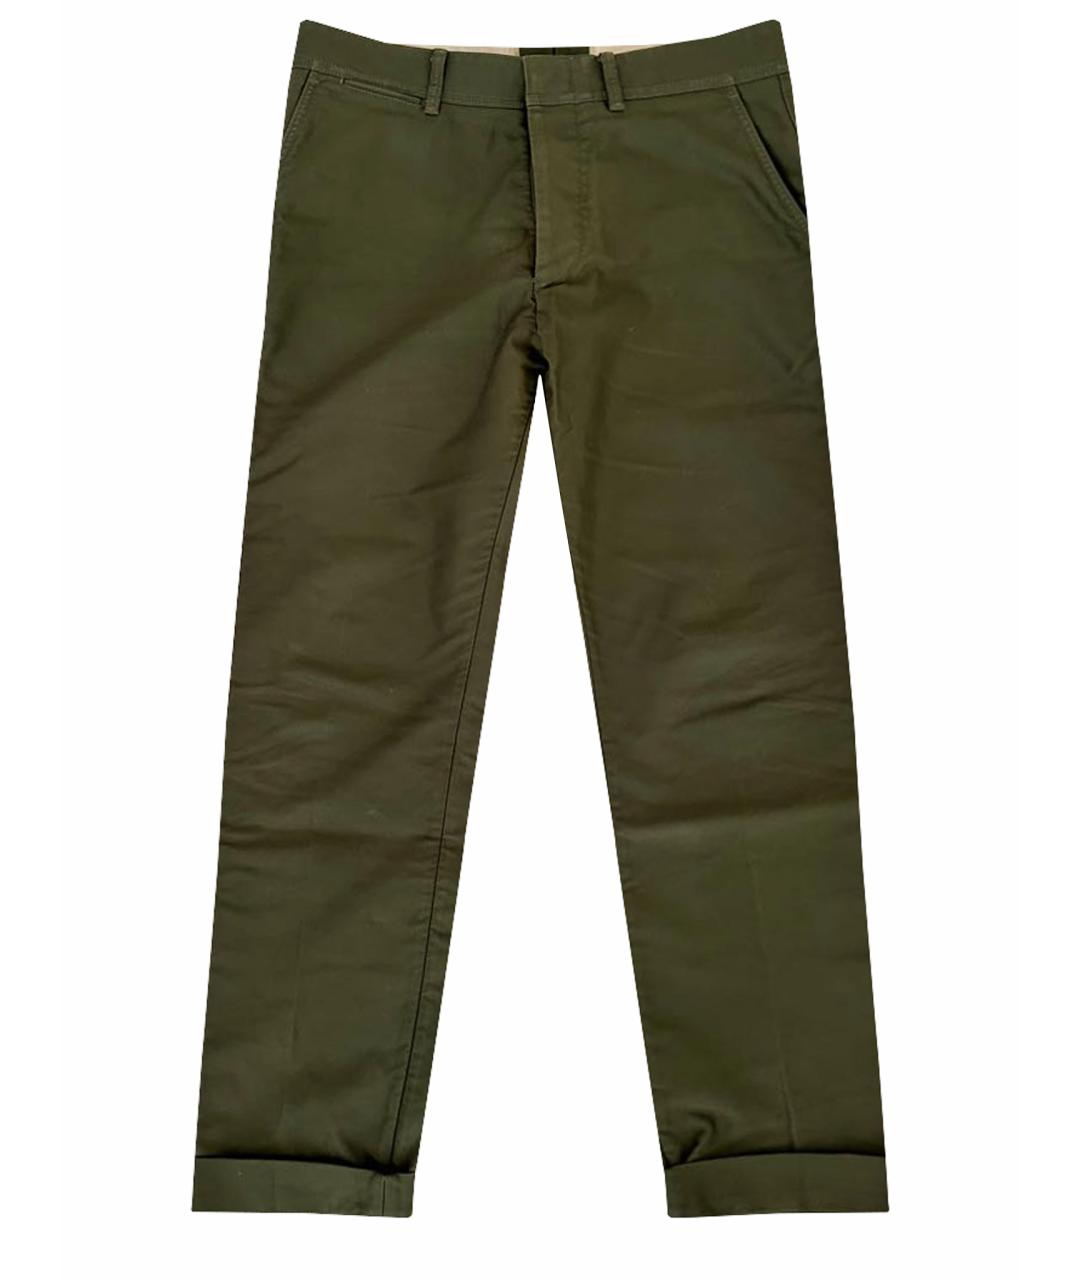 TOM FORD Зеленые хлопковые джинсы скинни, фото 1